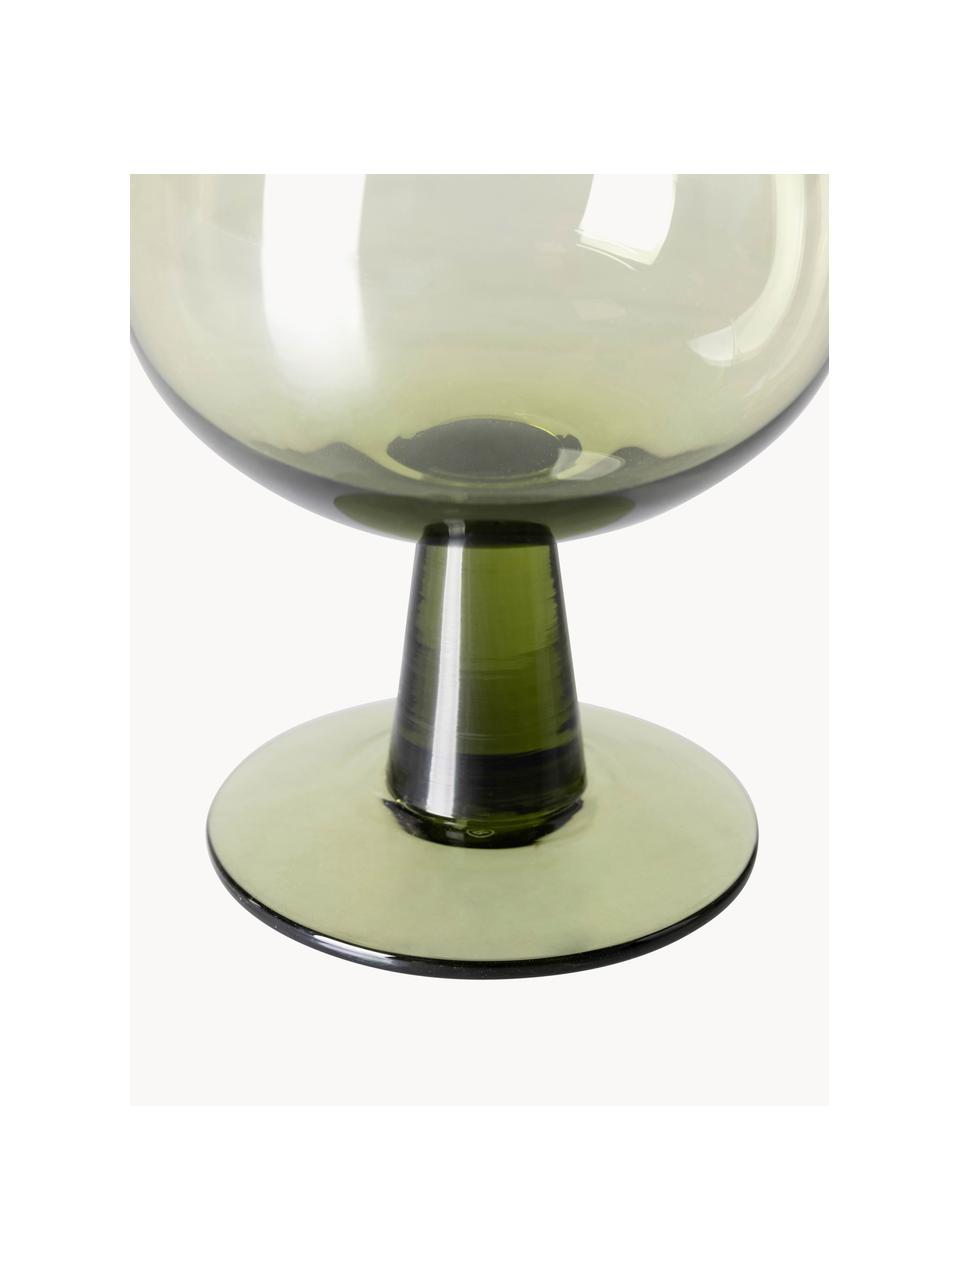 Weingläser The Emeralds, 4 Stück, Glas, Olivgrün, transparent, Ø 9 x H 12 cm, 250 ml